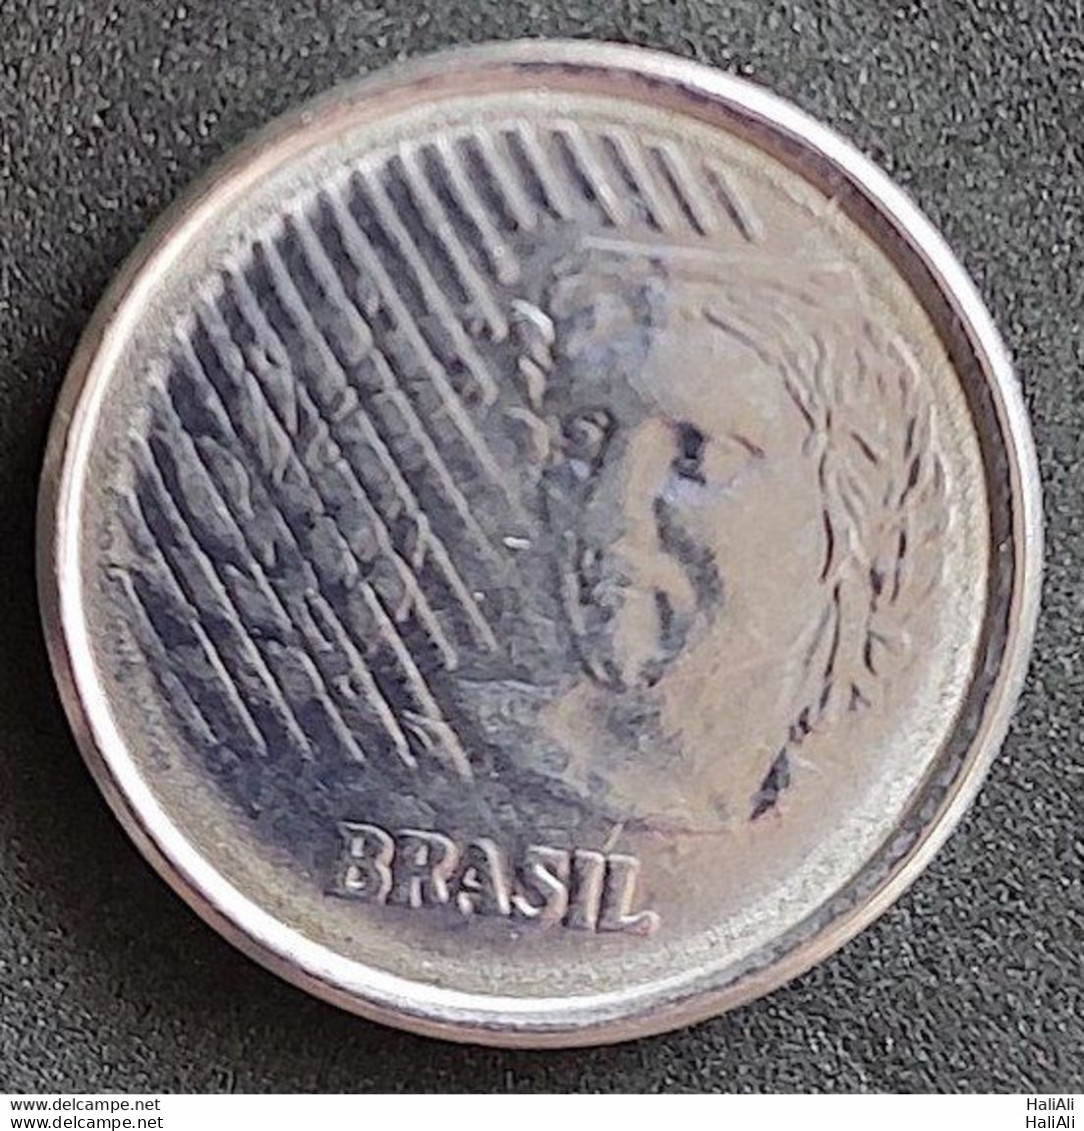 Coin Brazil Moeda Brasil 1997 1 Centavo 3 - Brésil